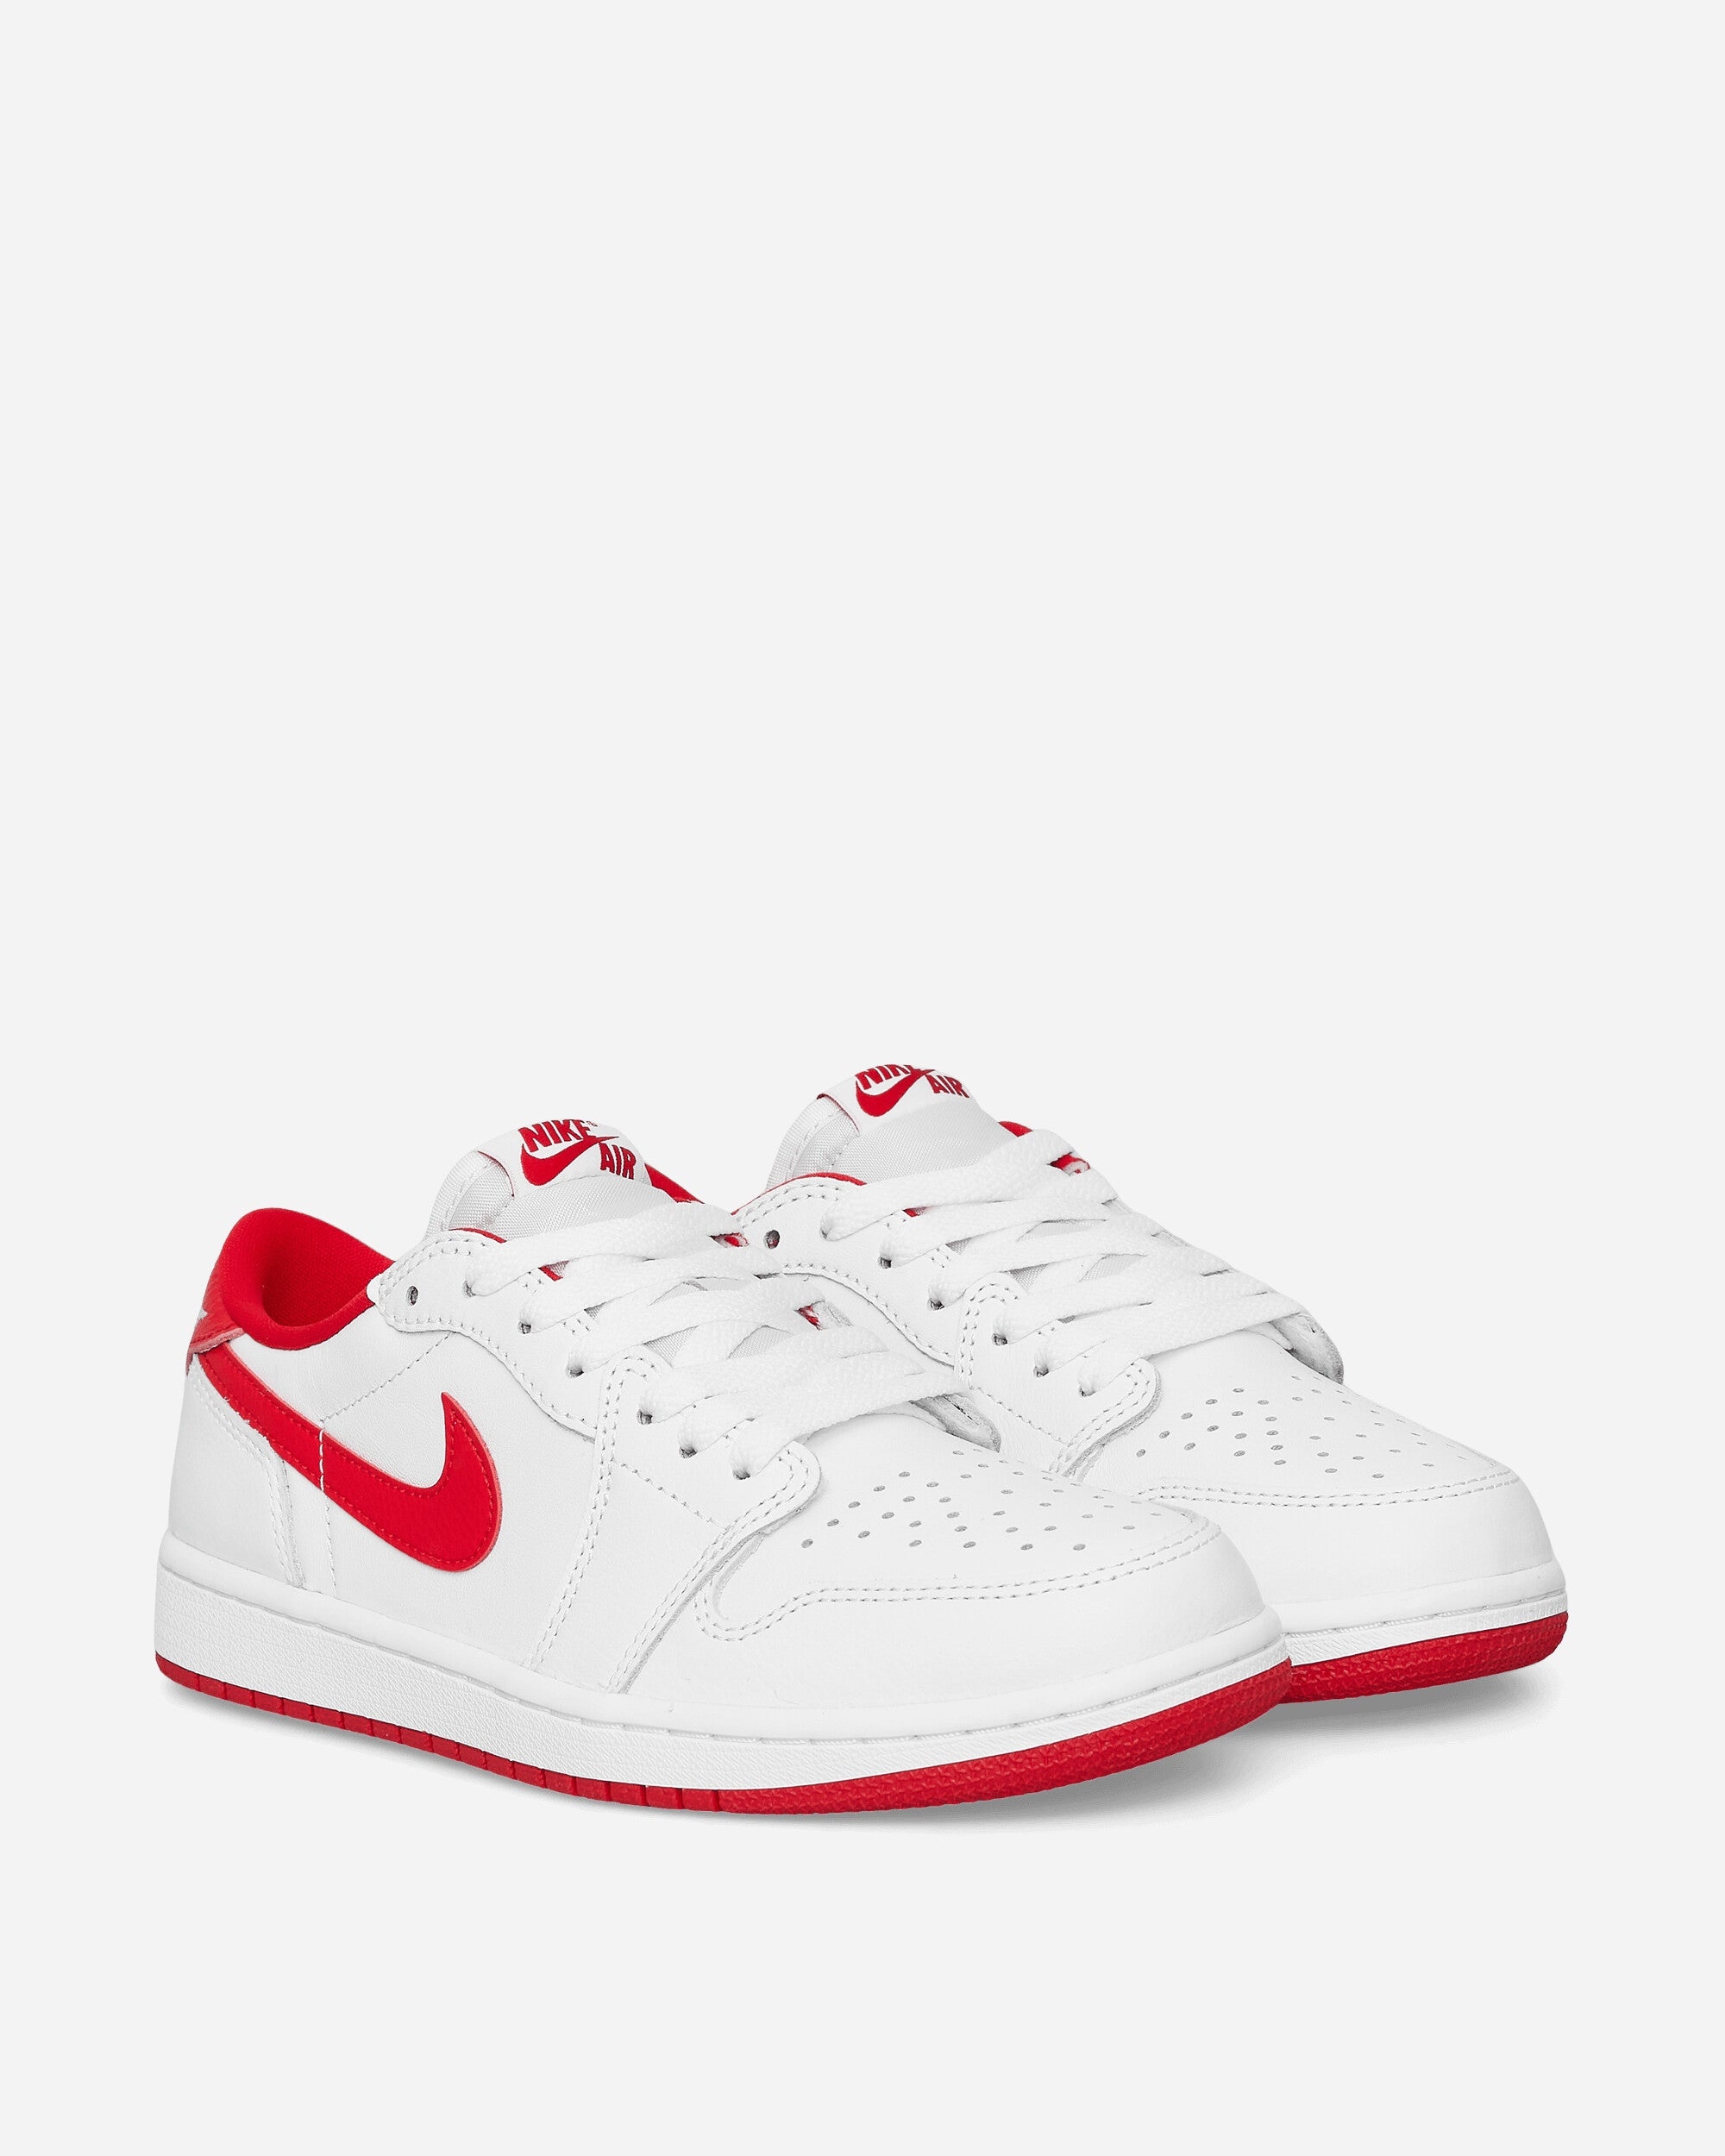 Air Jordan 1 Retro Low OG Sneakers Og White / University Red /White - 2